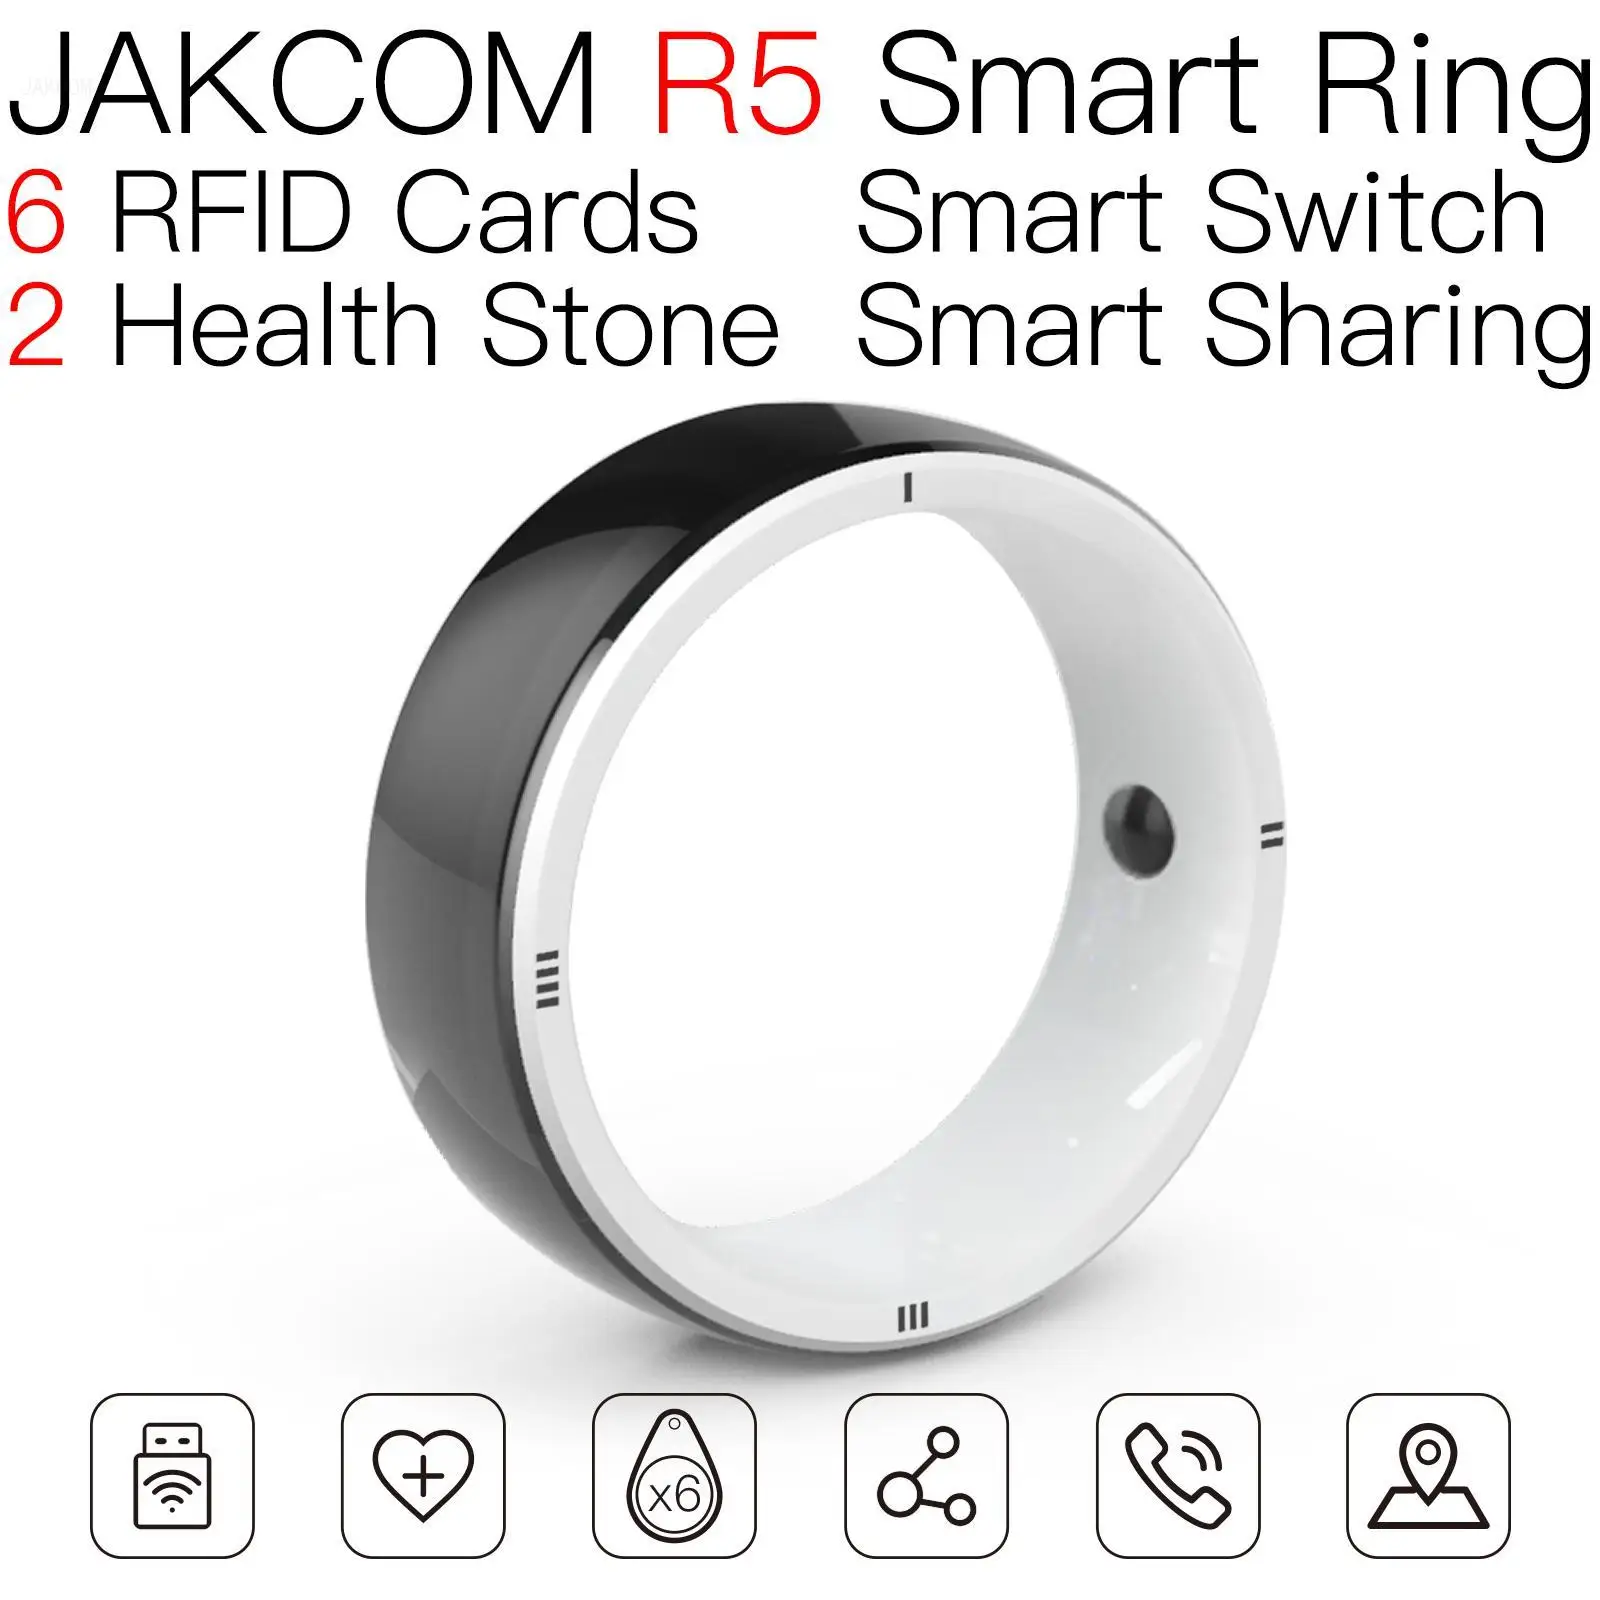 

Умное кольцо JAKCOM R5, лучше, чем безопасность, для магазина, комплект из 85 штук гнезд, хамелеон, nfc, блокировка rfid, считыватель чипов, собак, конц...